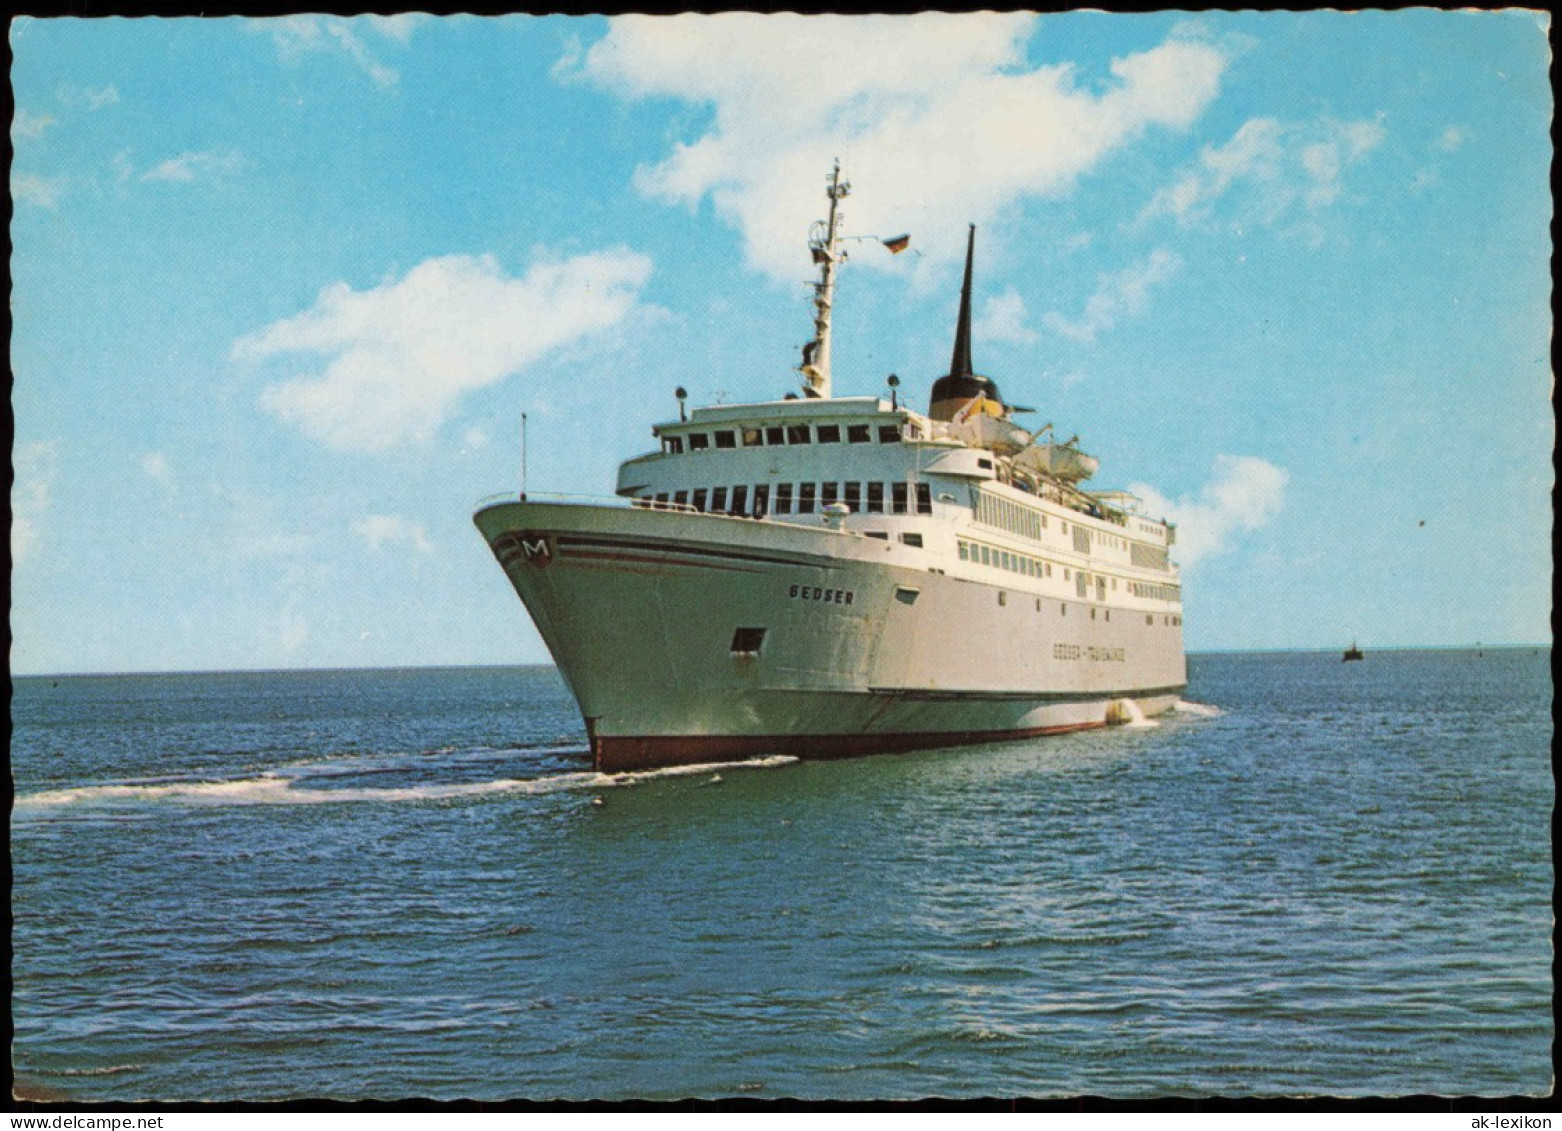 Ansichtskarte  Fahrgastschiffe Personenschiffahrt Færgen M/F ,,Gedser" 1978 - Ferries